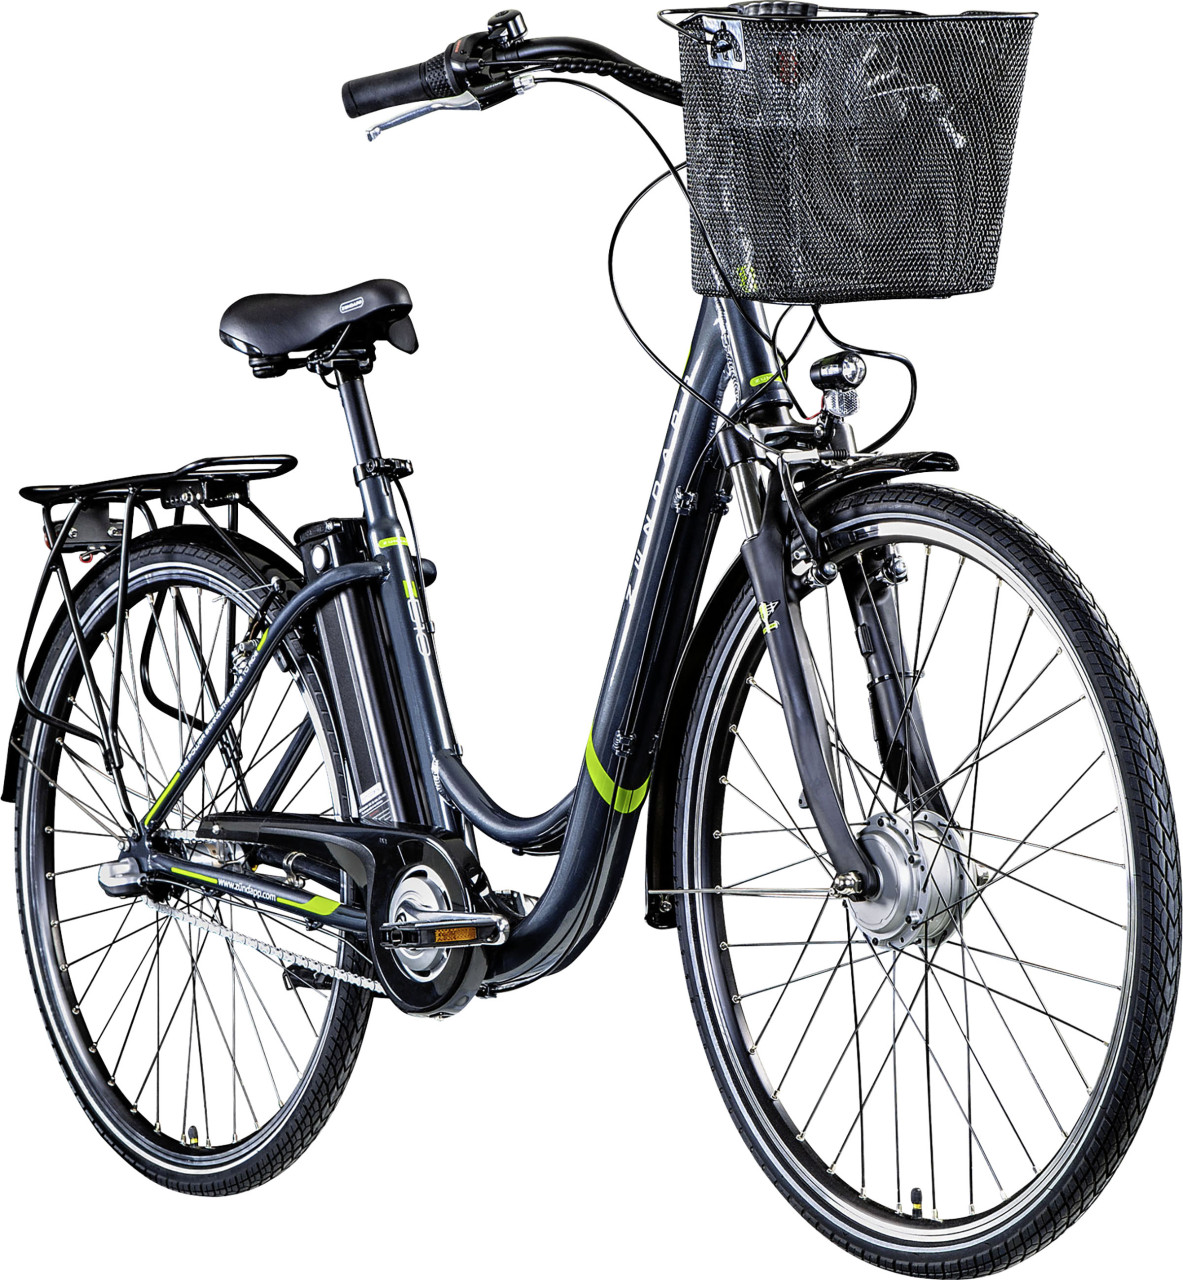 Zündapp E-Bike City Z510 700c Damen 28 Zoll RH 48cm 3-Gang 374 Wh grau grün